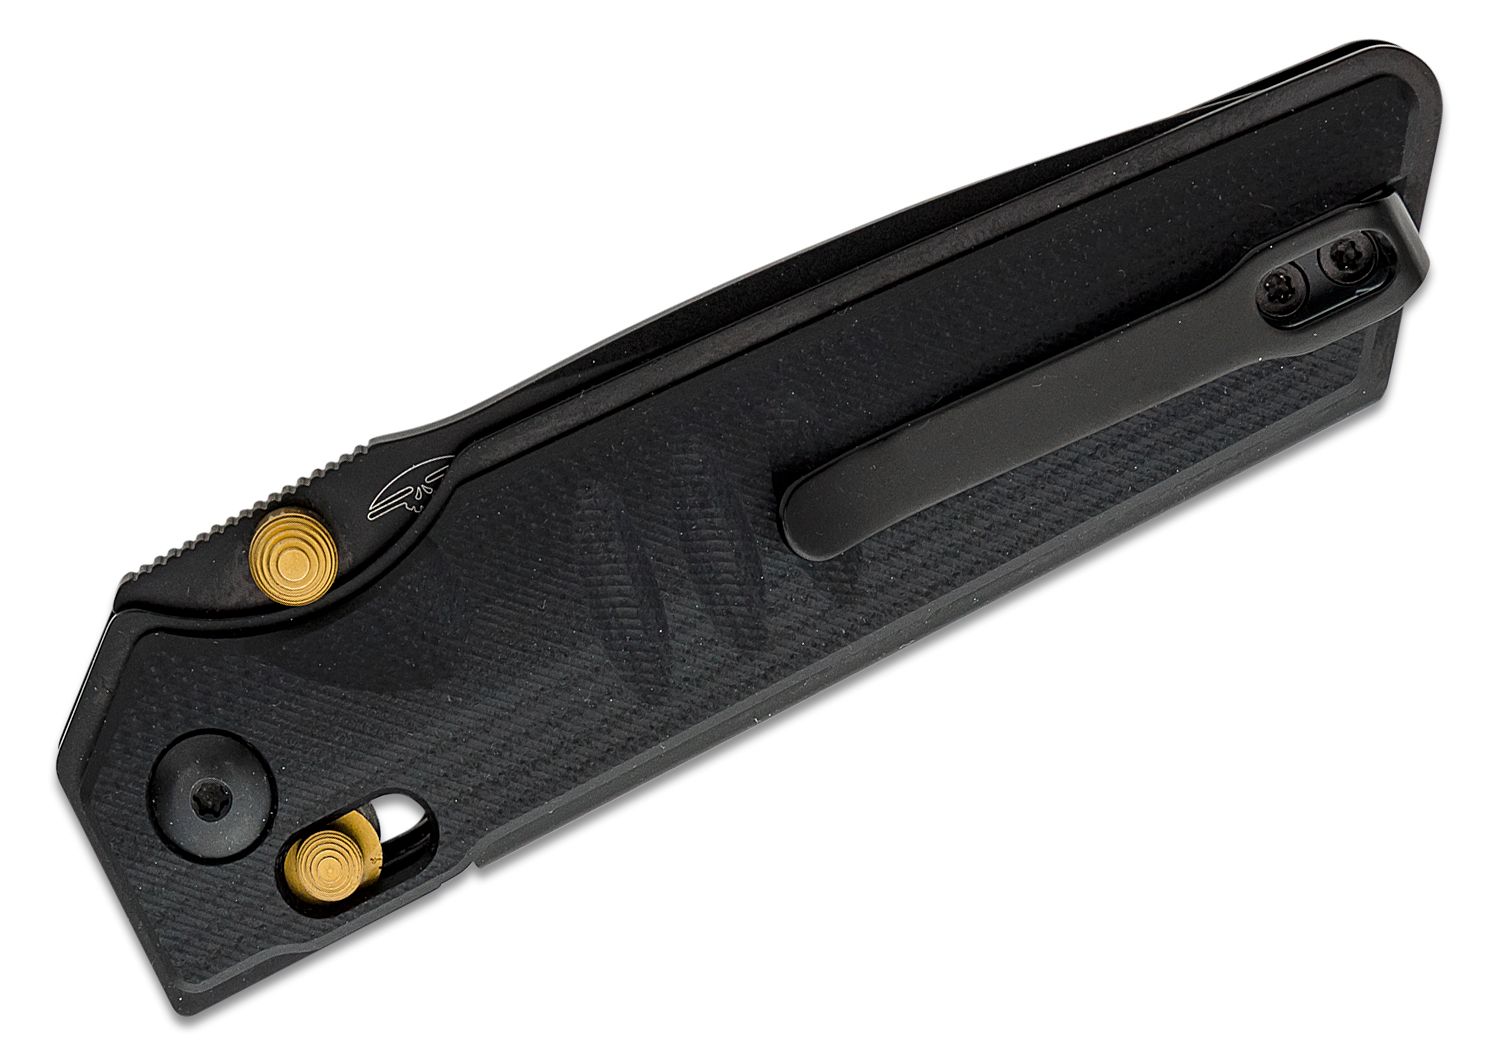  Real Steel Sacra Folding Pocket Knife - Bohler K110